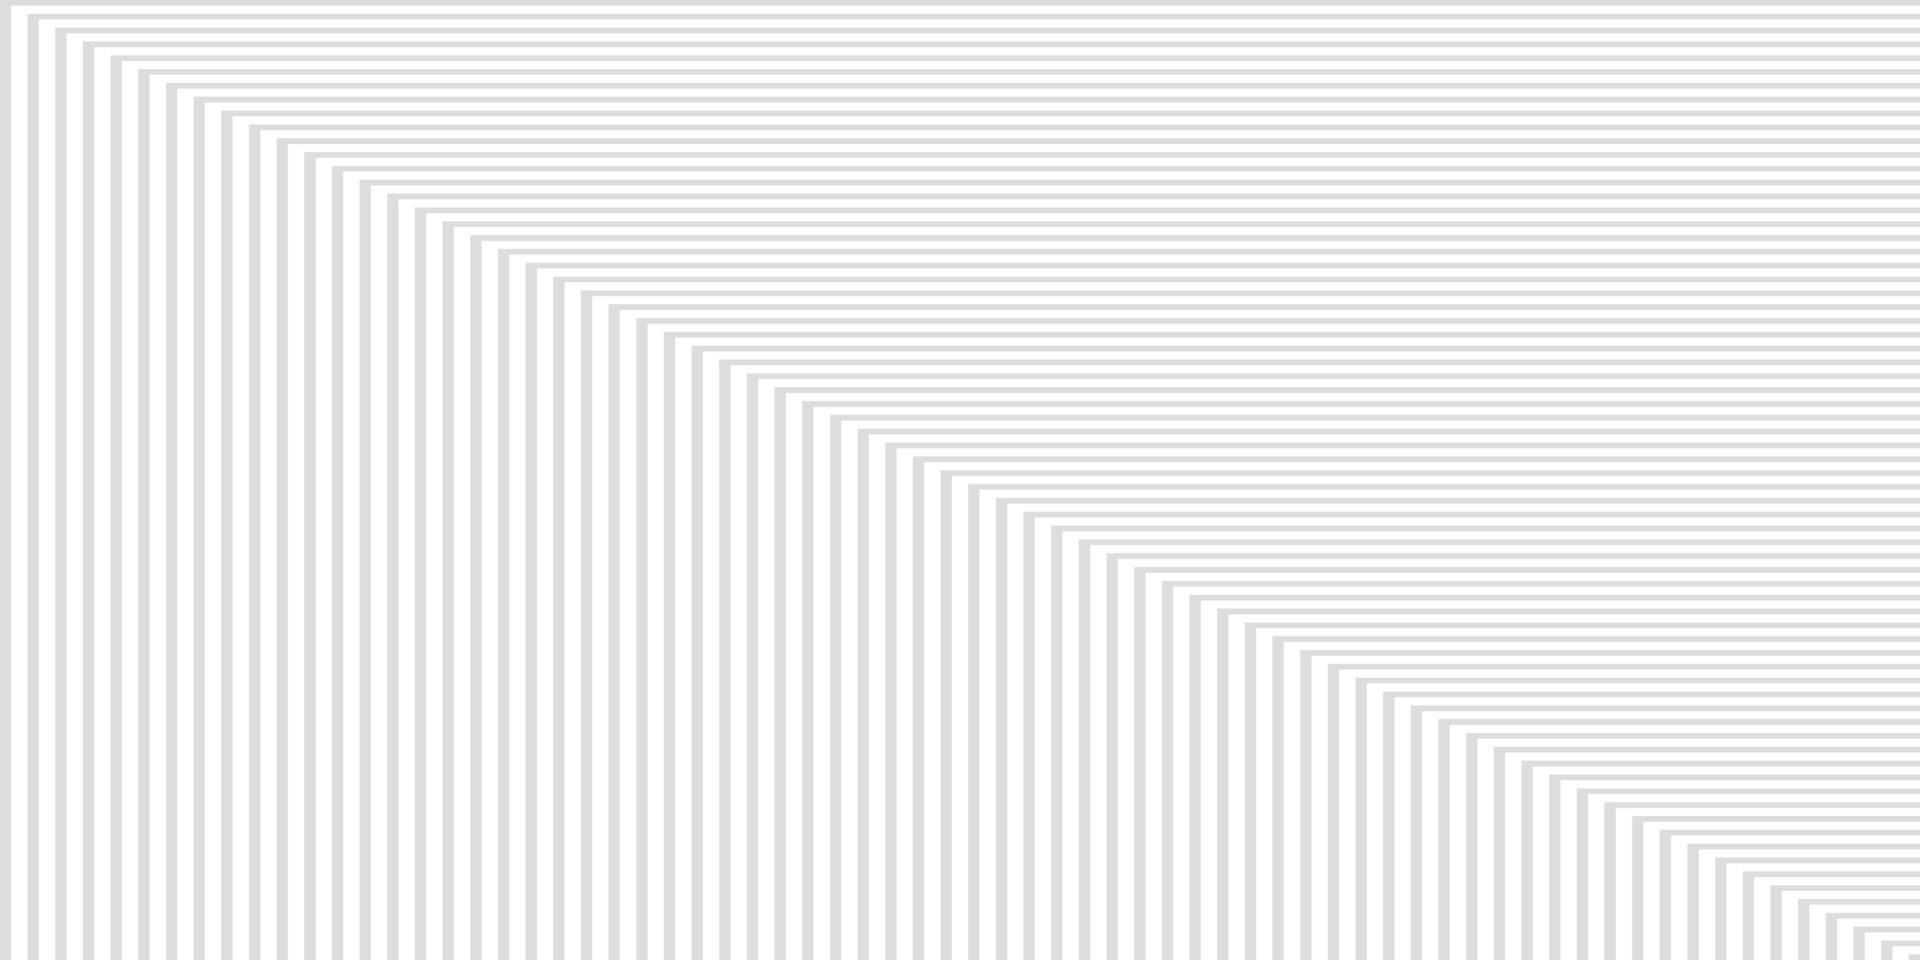 abstrakt vit och grå färg, modern designbakgrund med geometrisk rektangelform. vektor illustration.